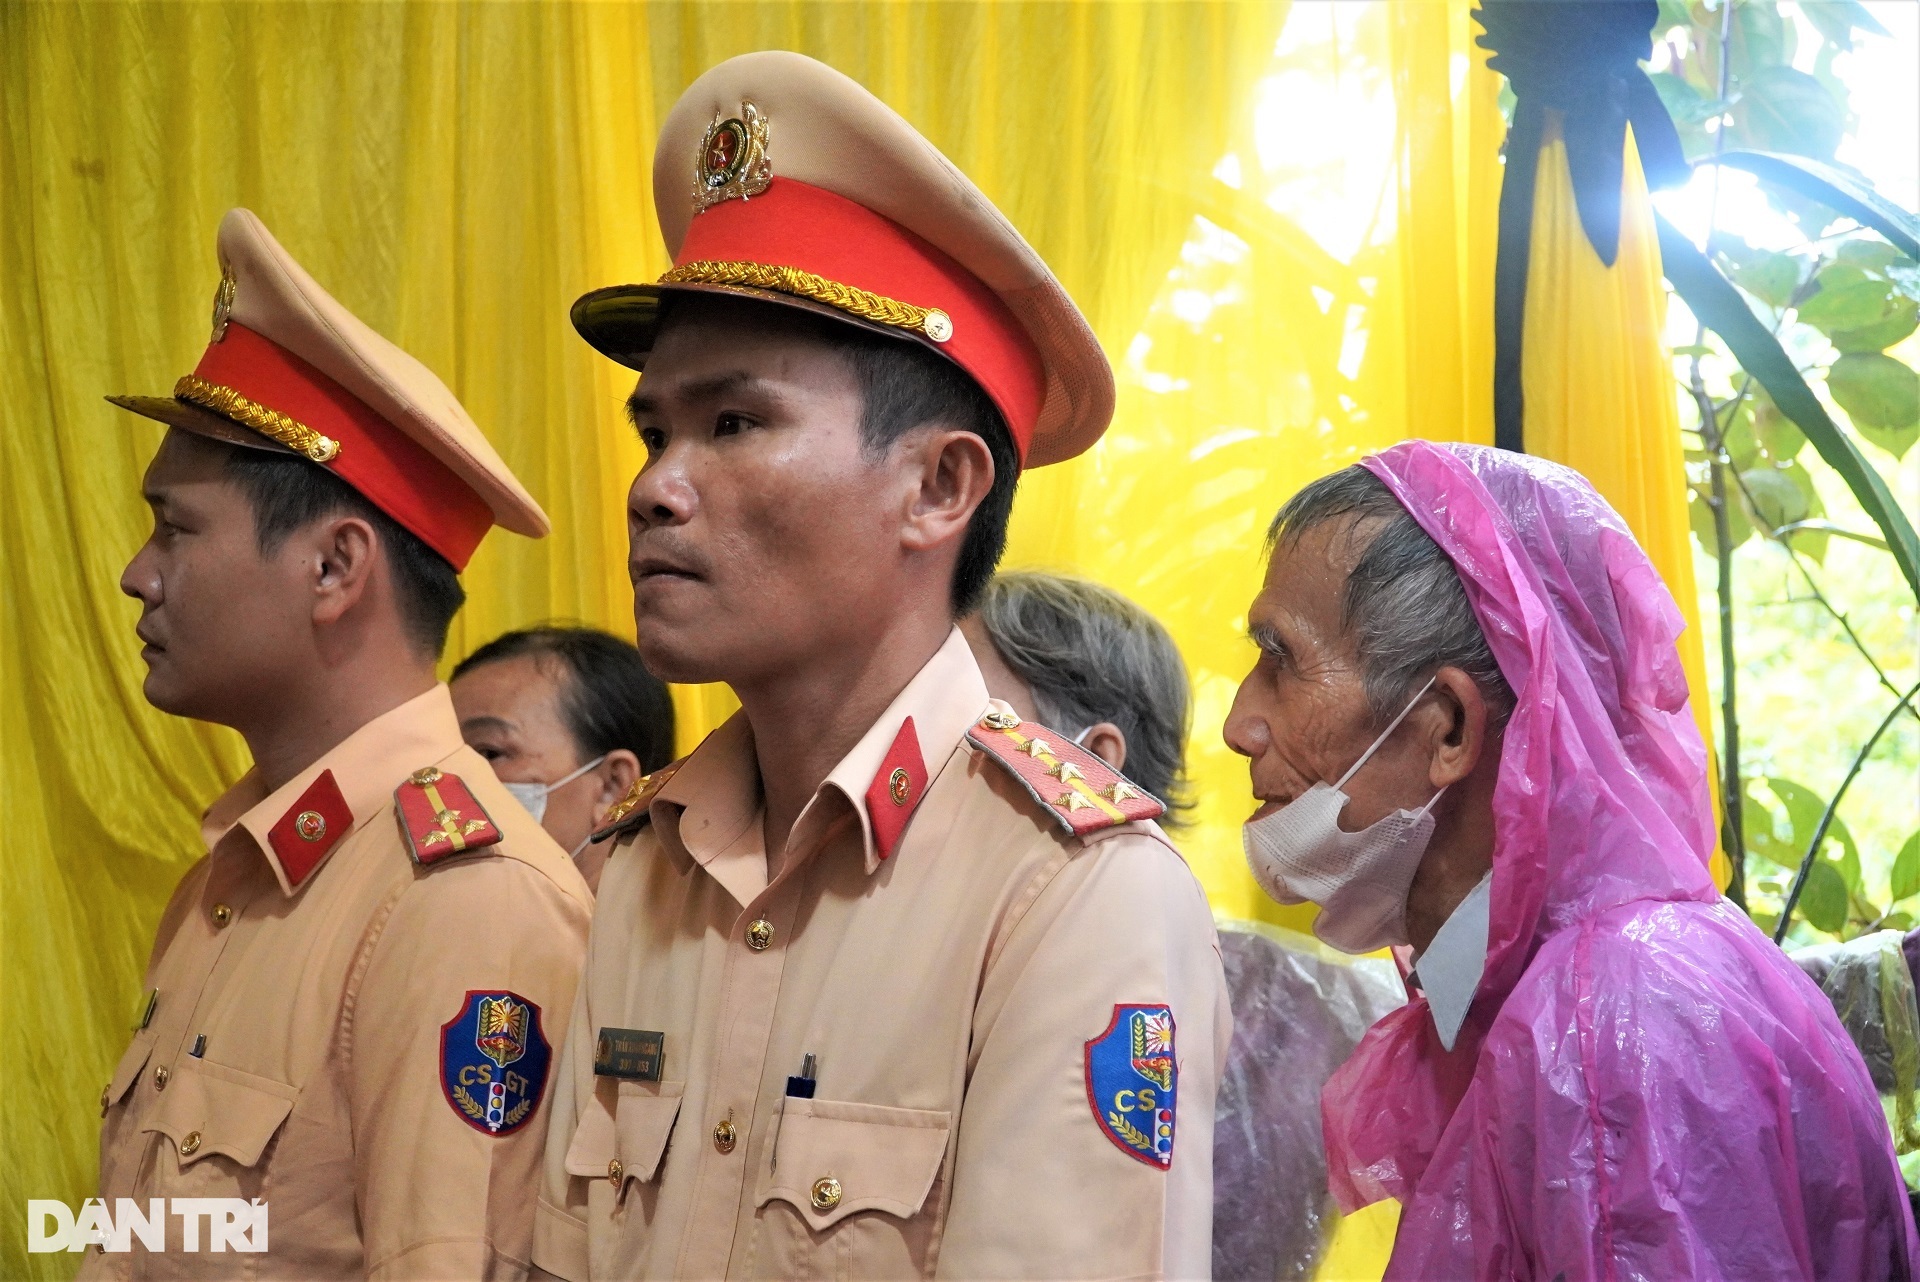 Người dân đội mưa, nghẹn ngào đón linh cữu CSGT hy sinh trên đèo Bảo Lộc - 8